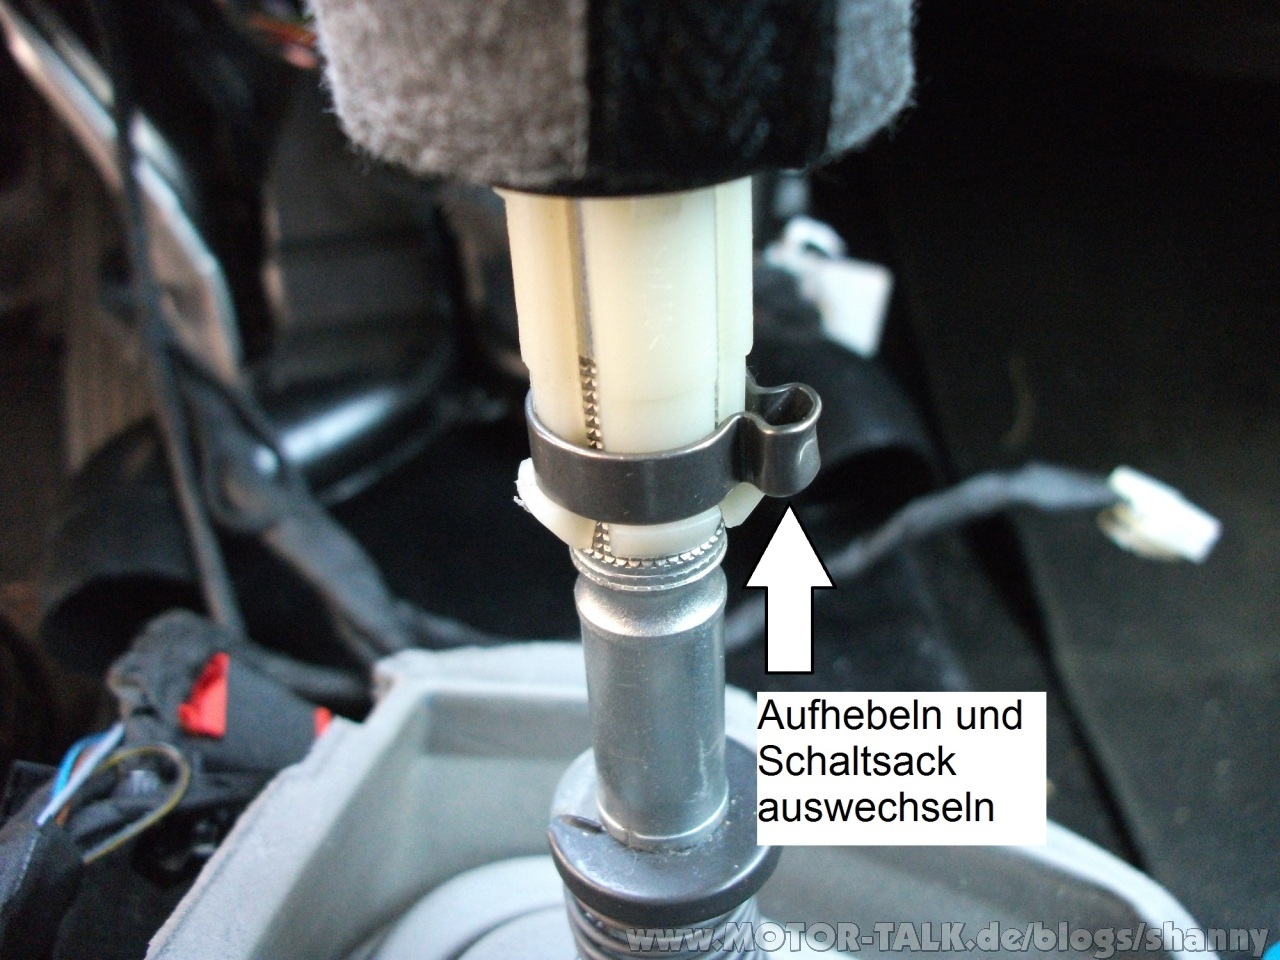 Anleitung Austausch Schaltsack am VW Golf 4 